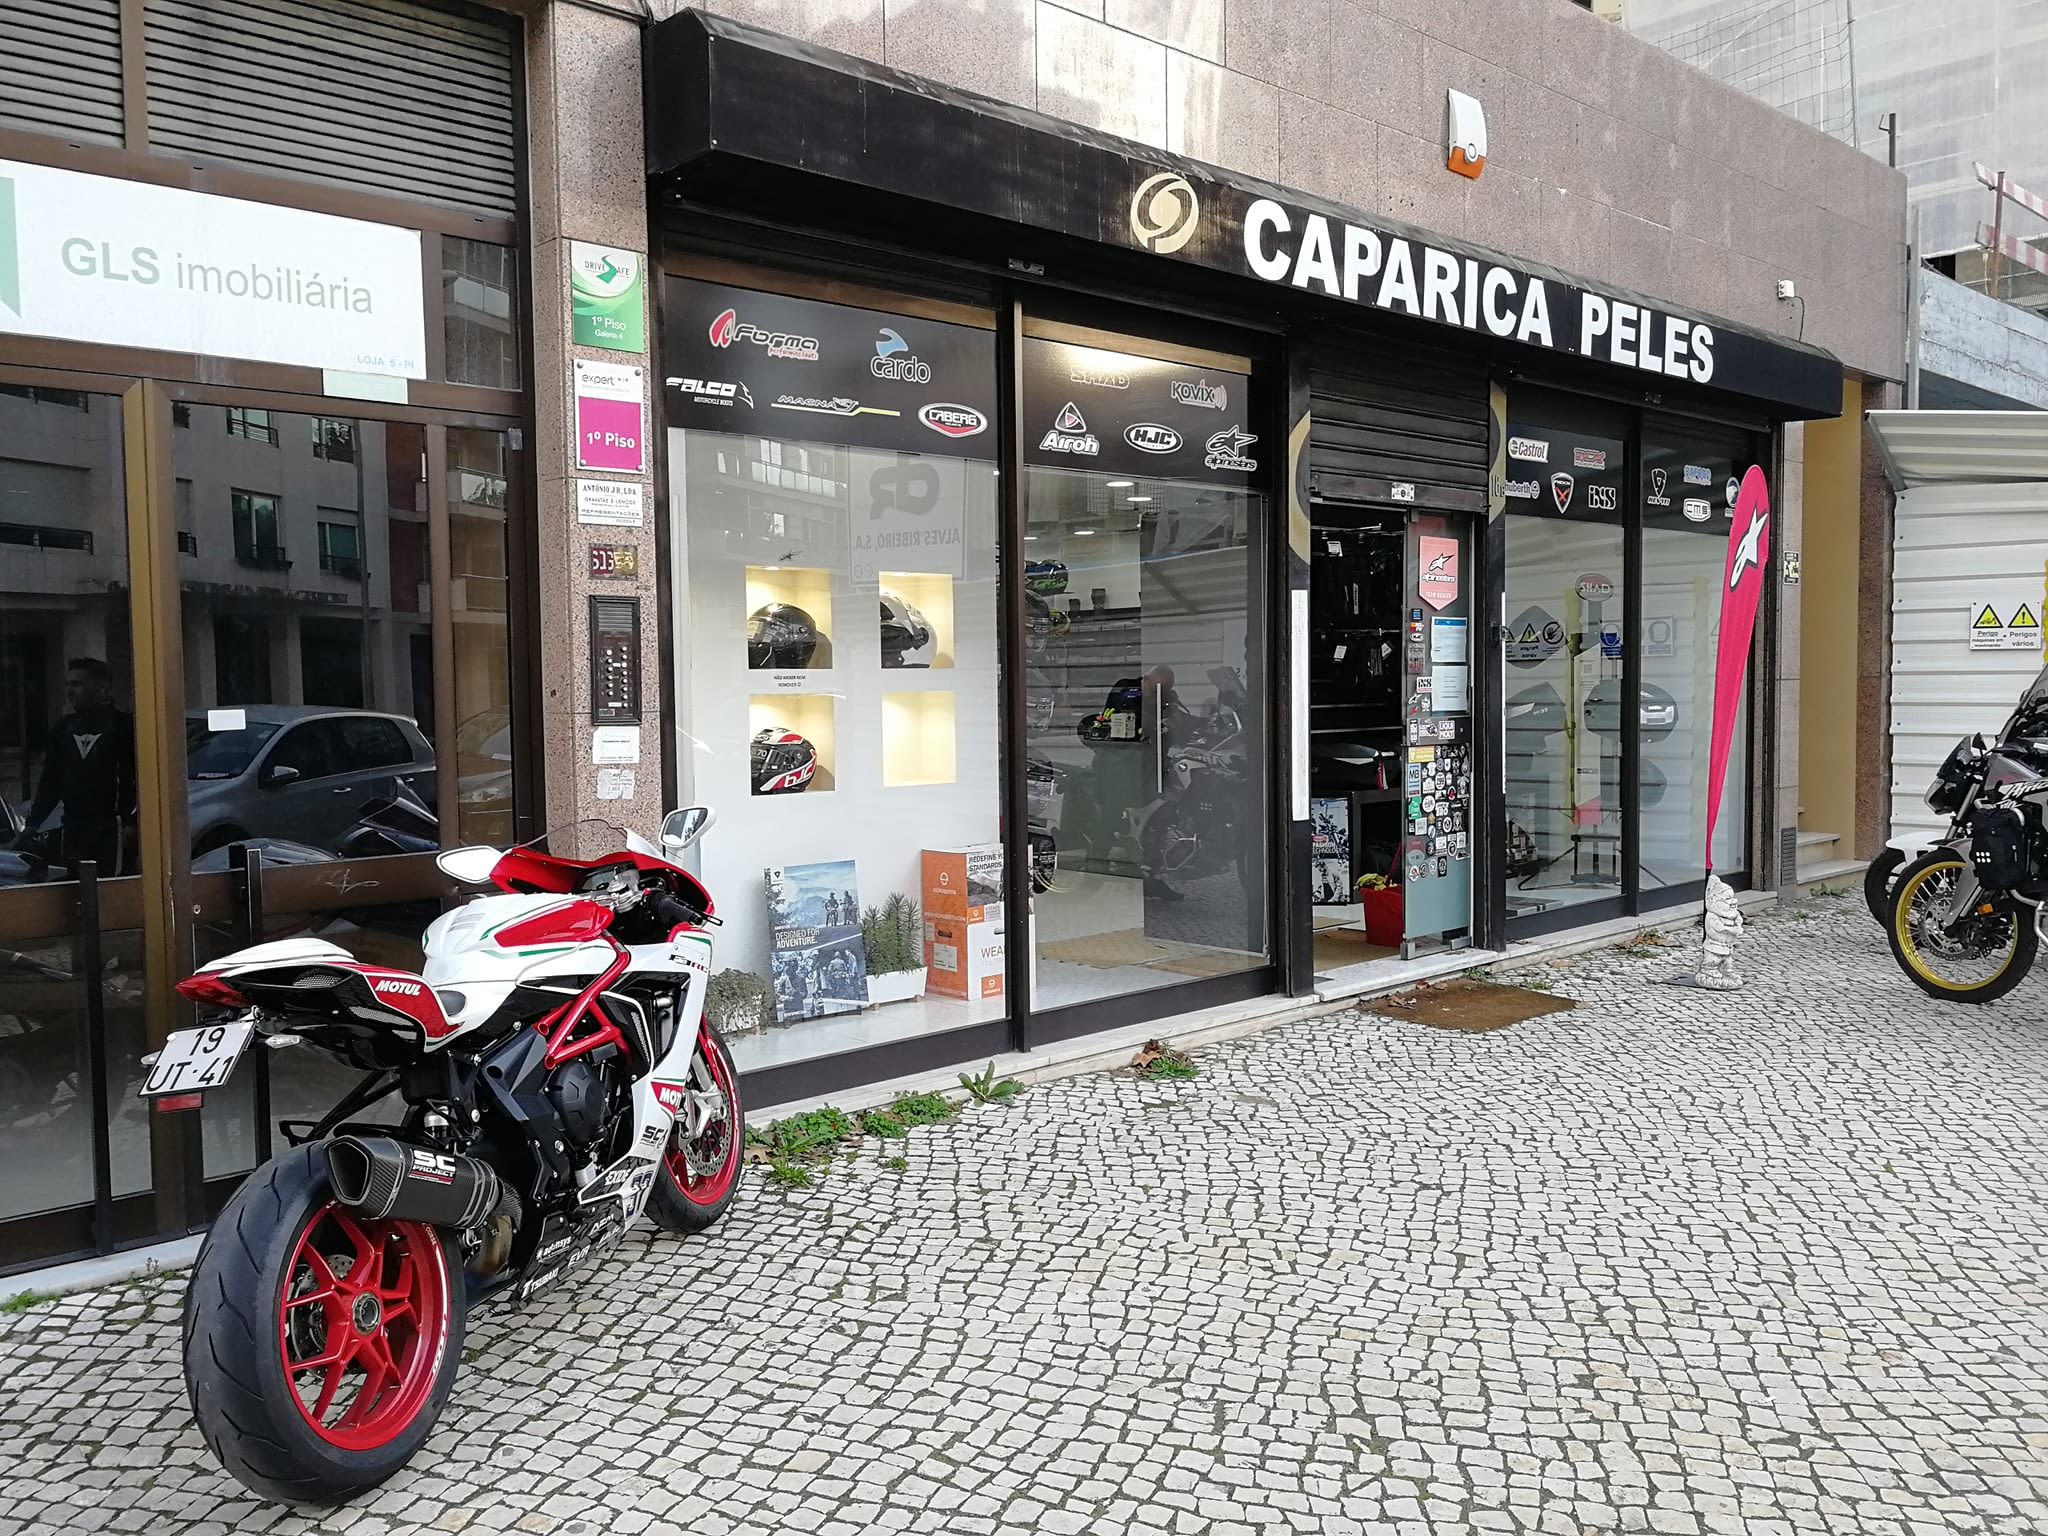 Caparica Peles (Lisboa) - Vestuário e Acessórios para Motas